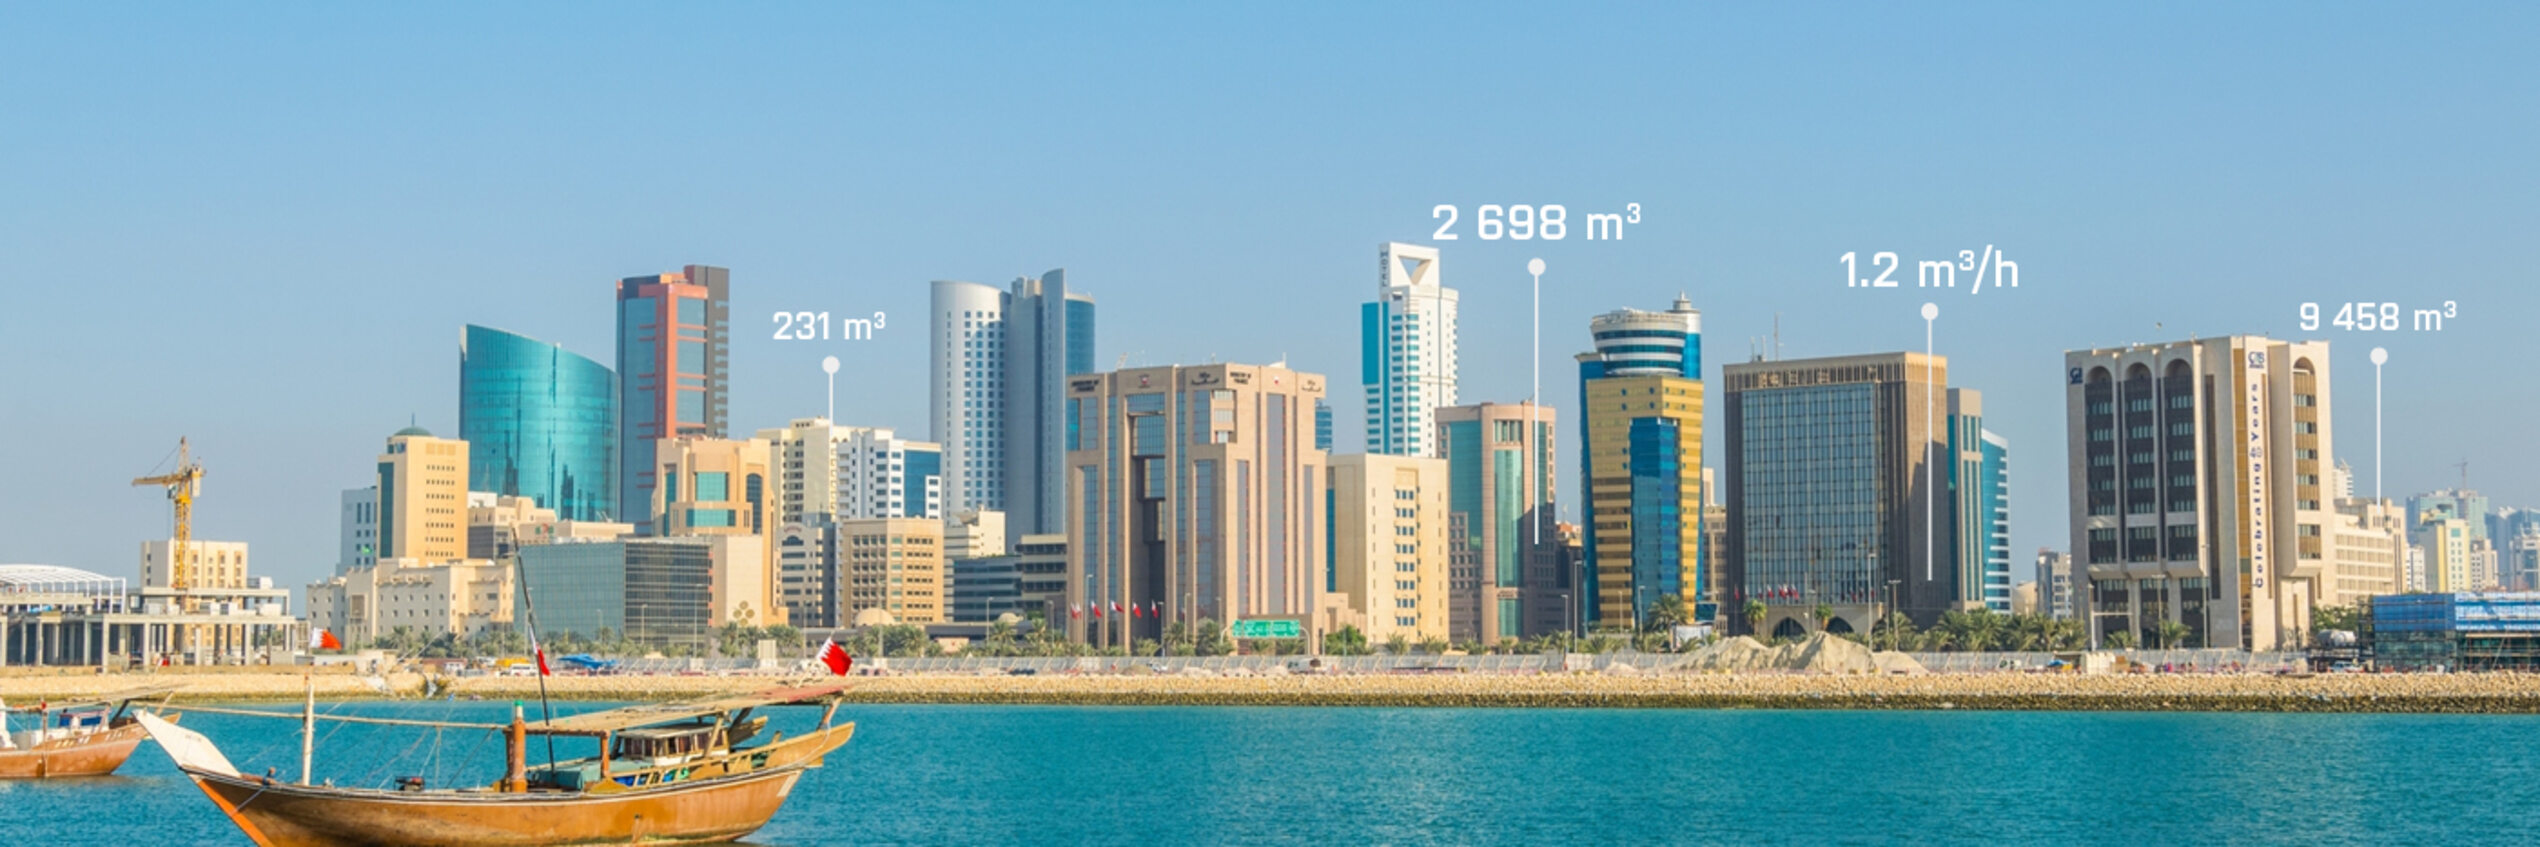 Bahreïn : une solution sur mesure pour passer à l'automatisation complète du réseau